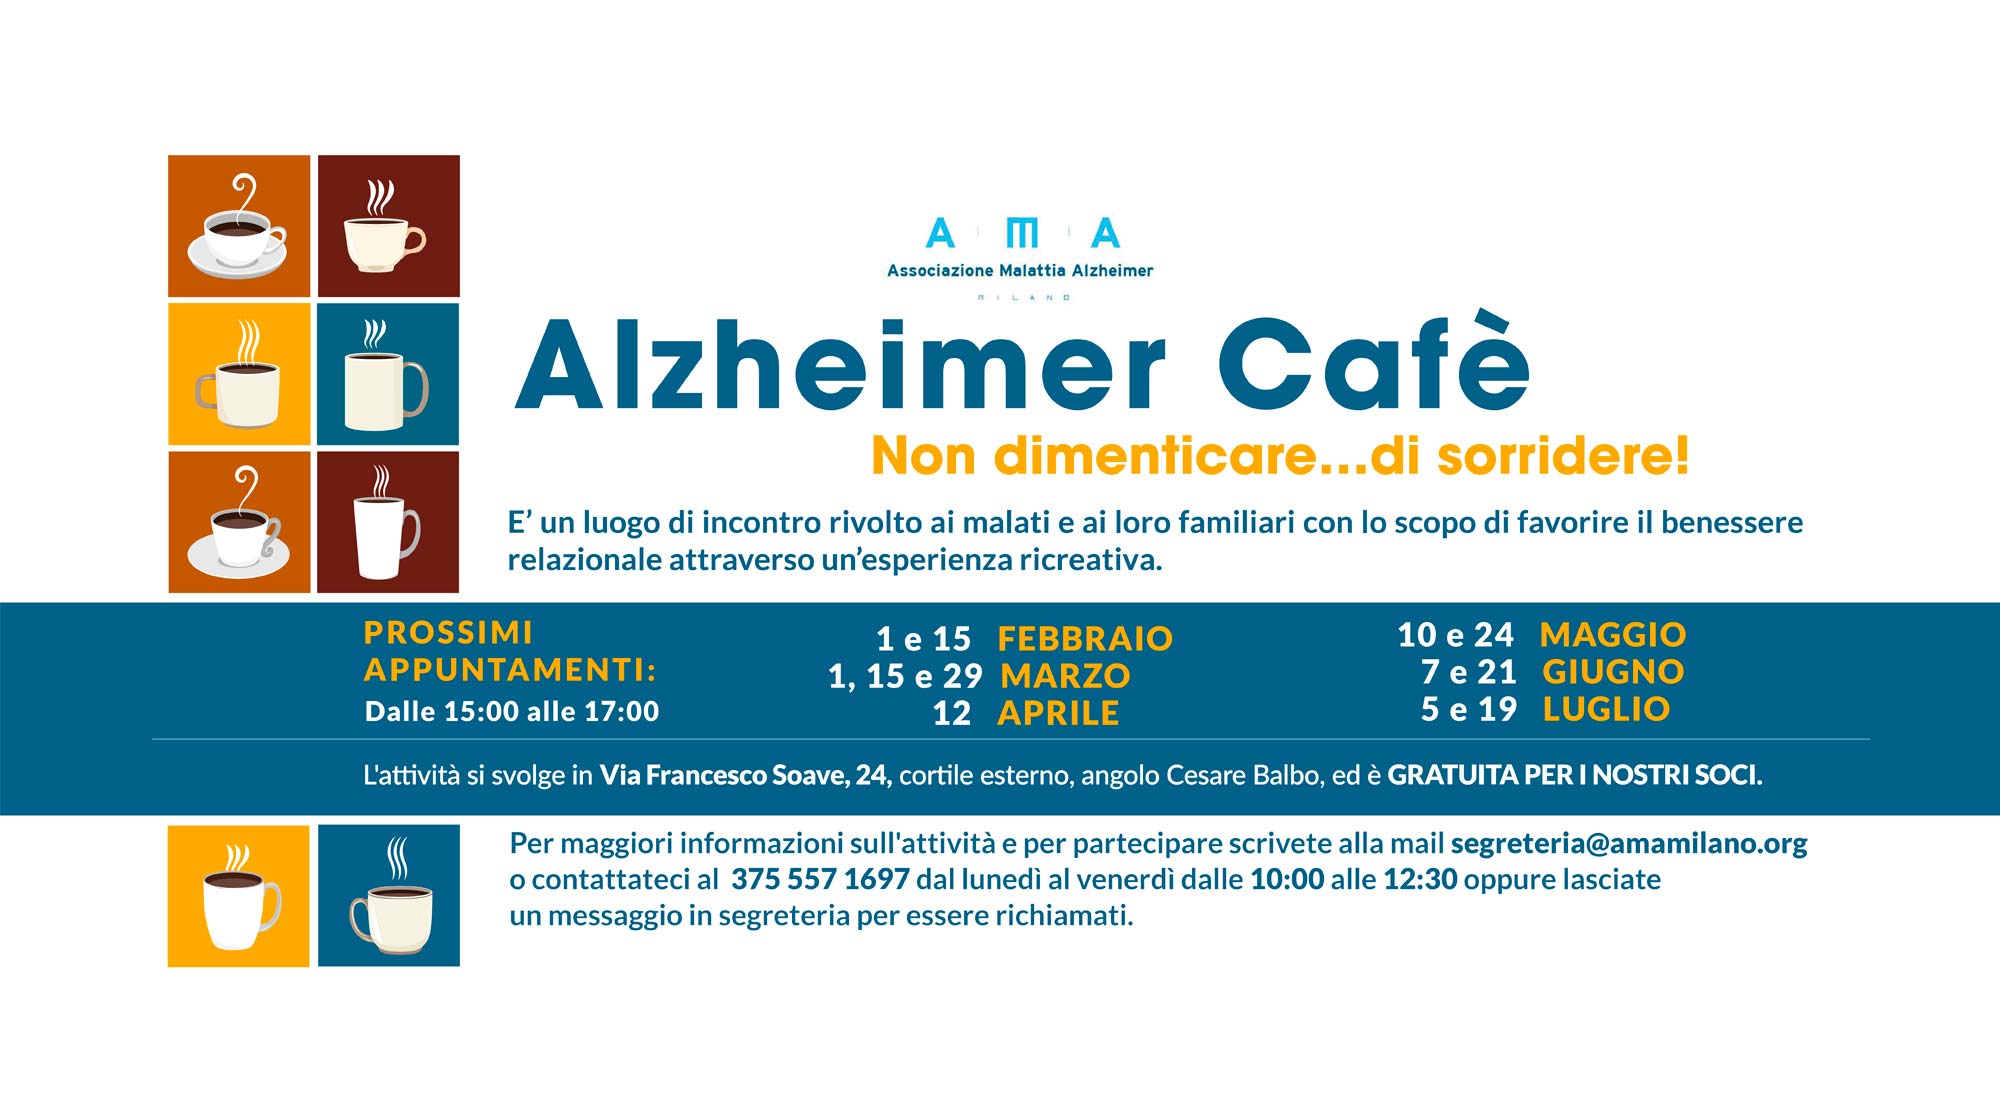 A.M.A. Milano - Alzheimer cafè